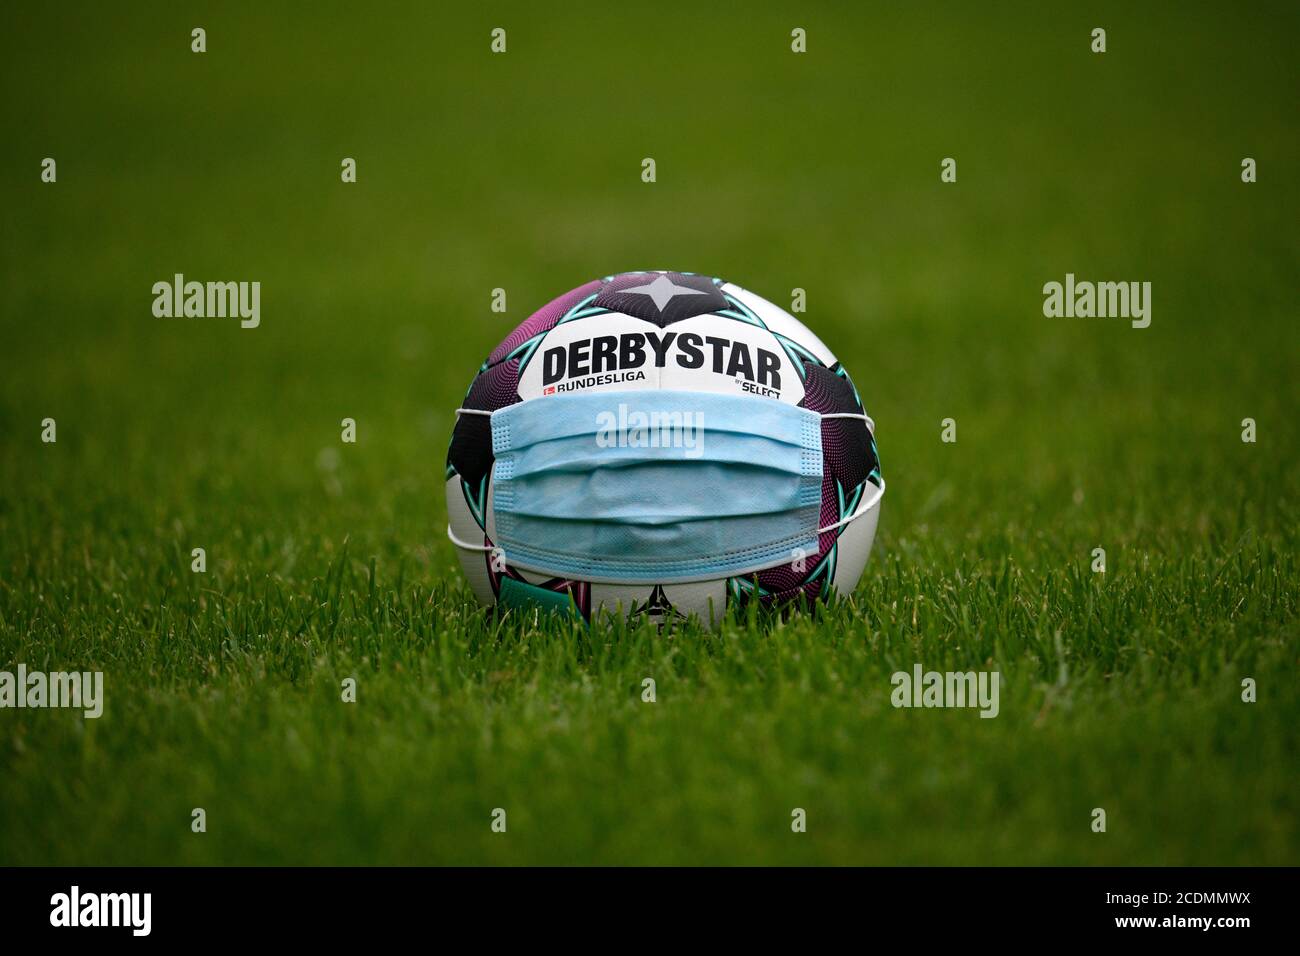 Adidas Derbystar Brillant APS 20/21, pallone della Bundesliga tedesca  stagione 2020/2021, maschera facciale, immagine simbolica della Bundesliga  nella Corona Foto stock - Alamy